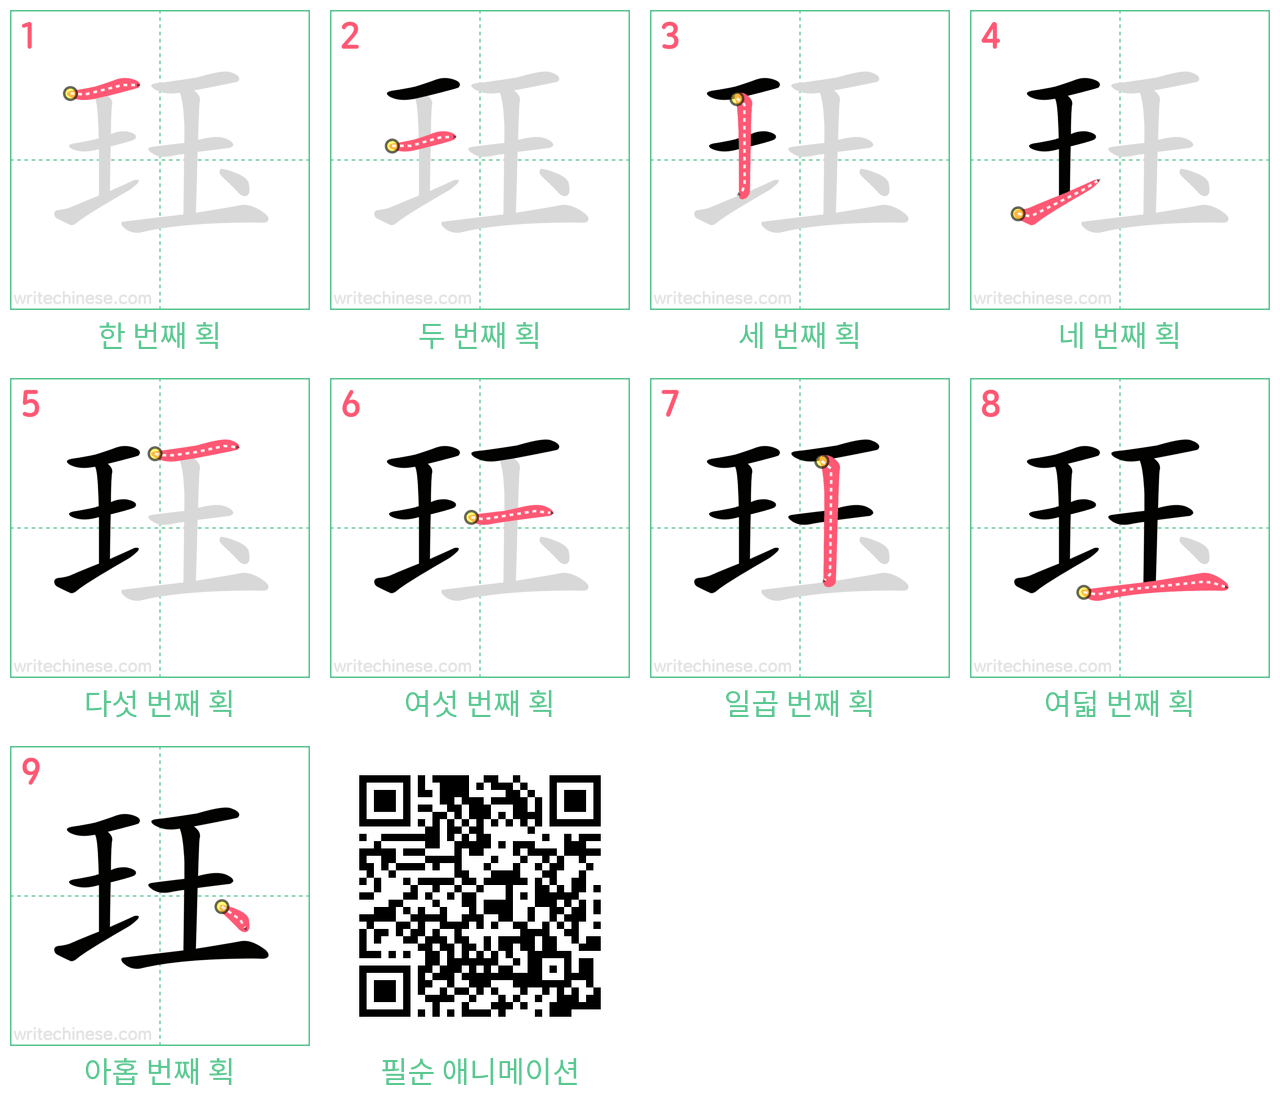 珏 step-by-step stroke order diagrams